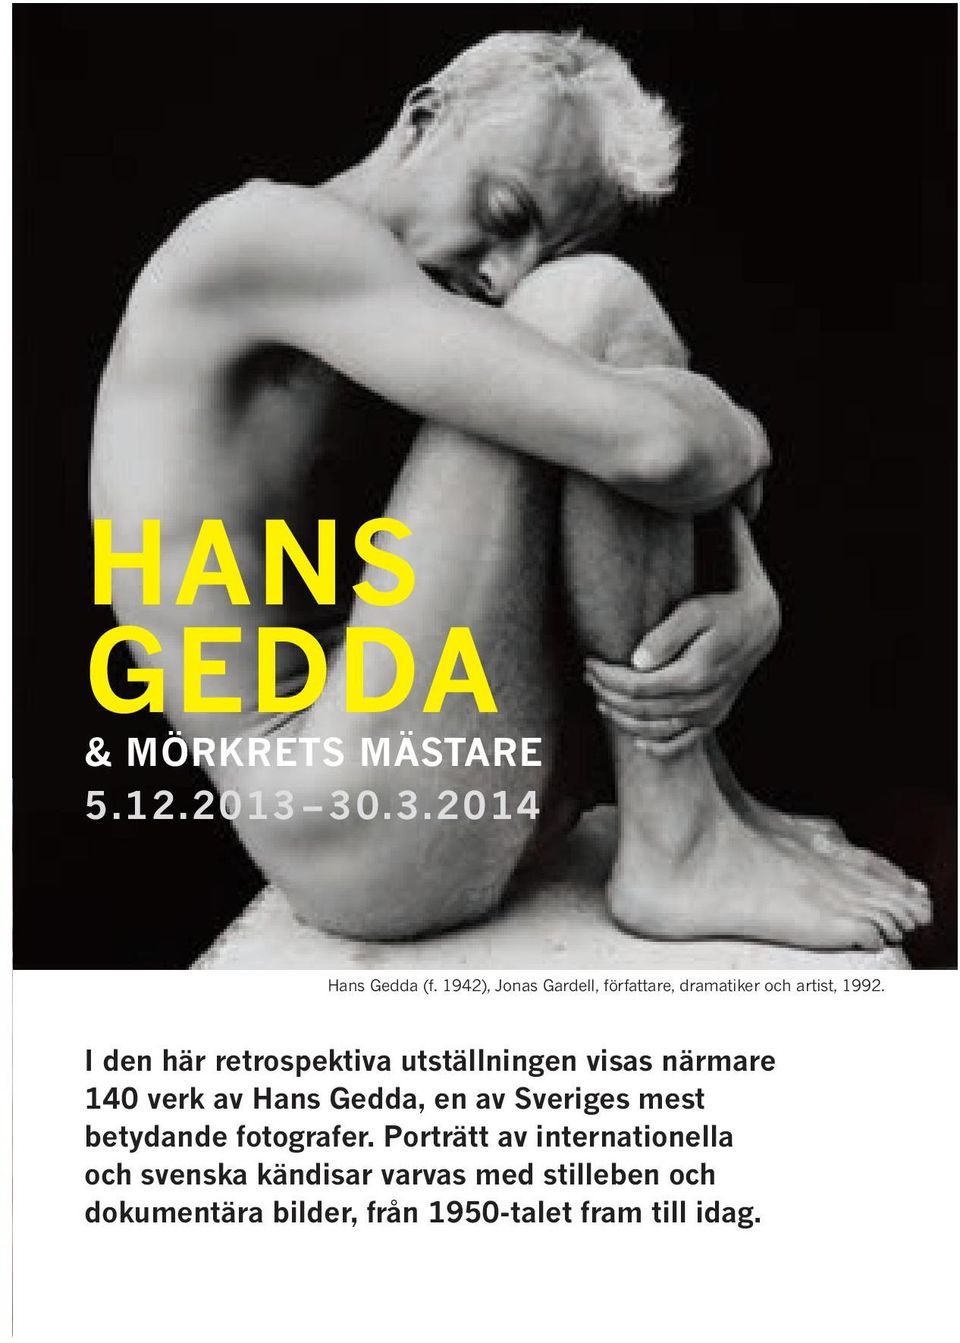 I den här retrospektiva utställningen visas närmare 140 verk av Hans Gedda, en av Sveriges